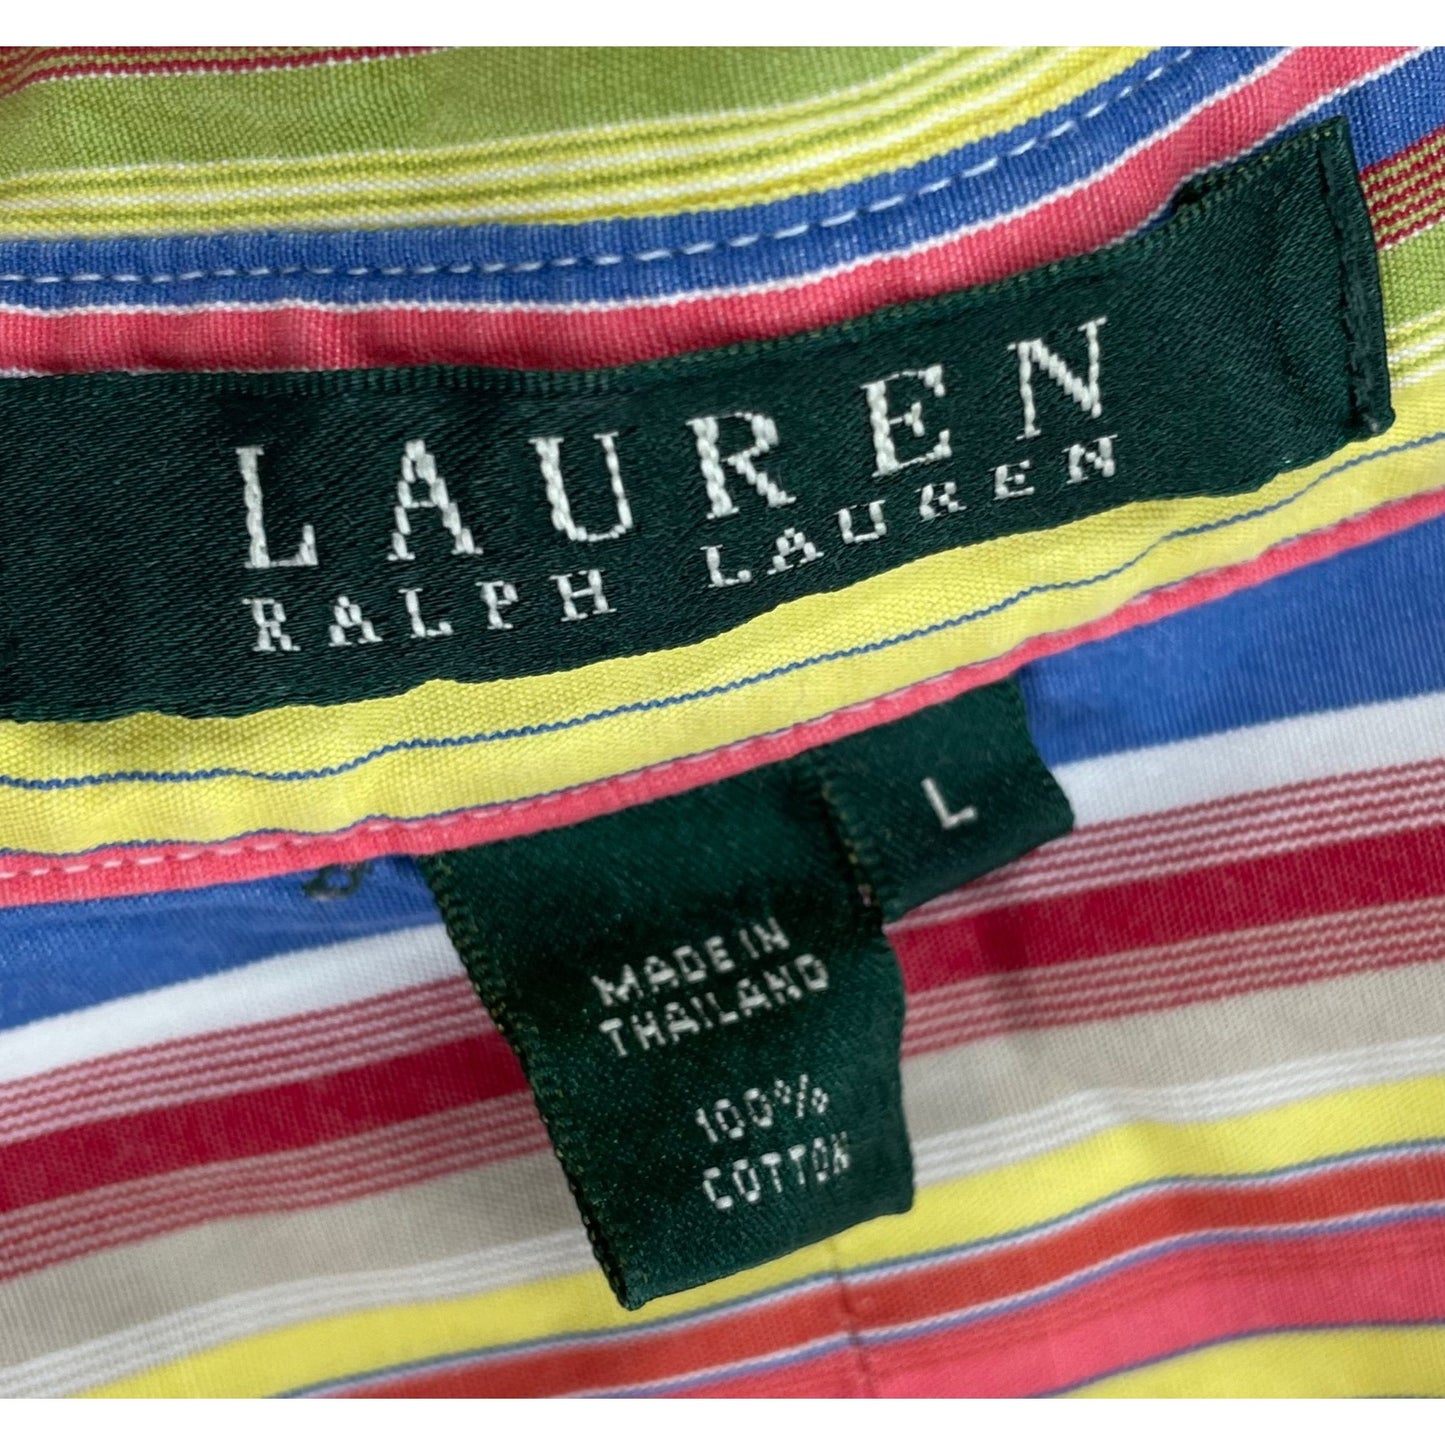 Lauren Ralph Lauren Women's Size Large Button-Down Yellow/Blue/Red Striped Shirt